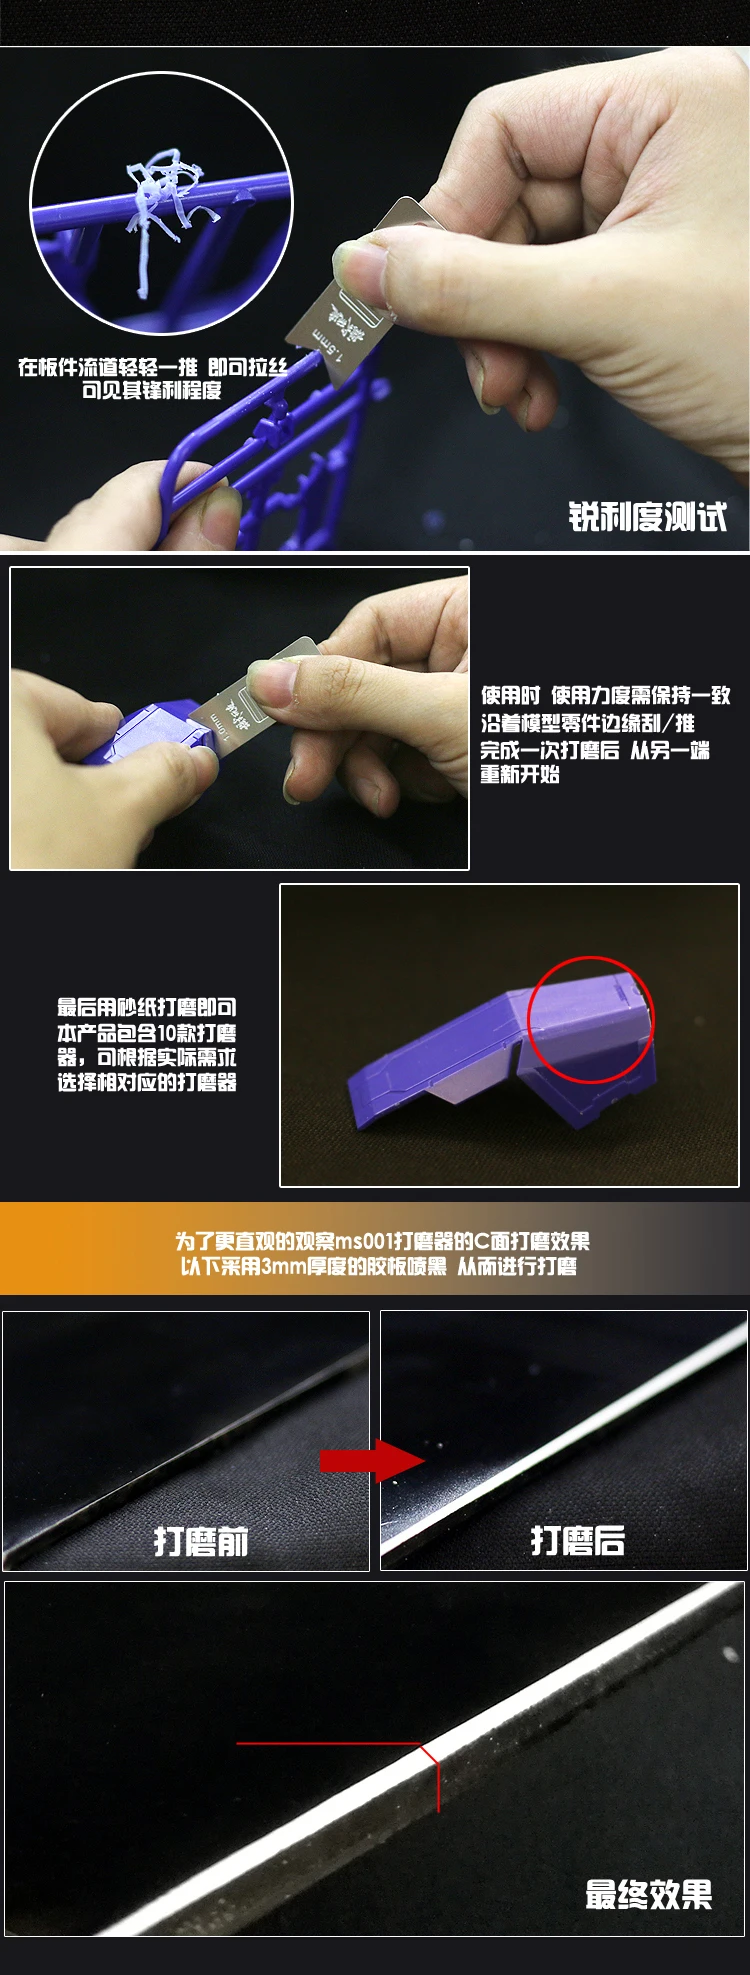 10 в 1 Gundam Тип C рот край ремонт инструменты DIY необходимые край рог ремонт нож моделирование хобби ремесло аксессуар